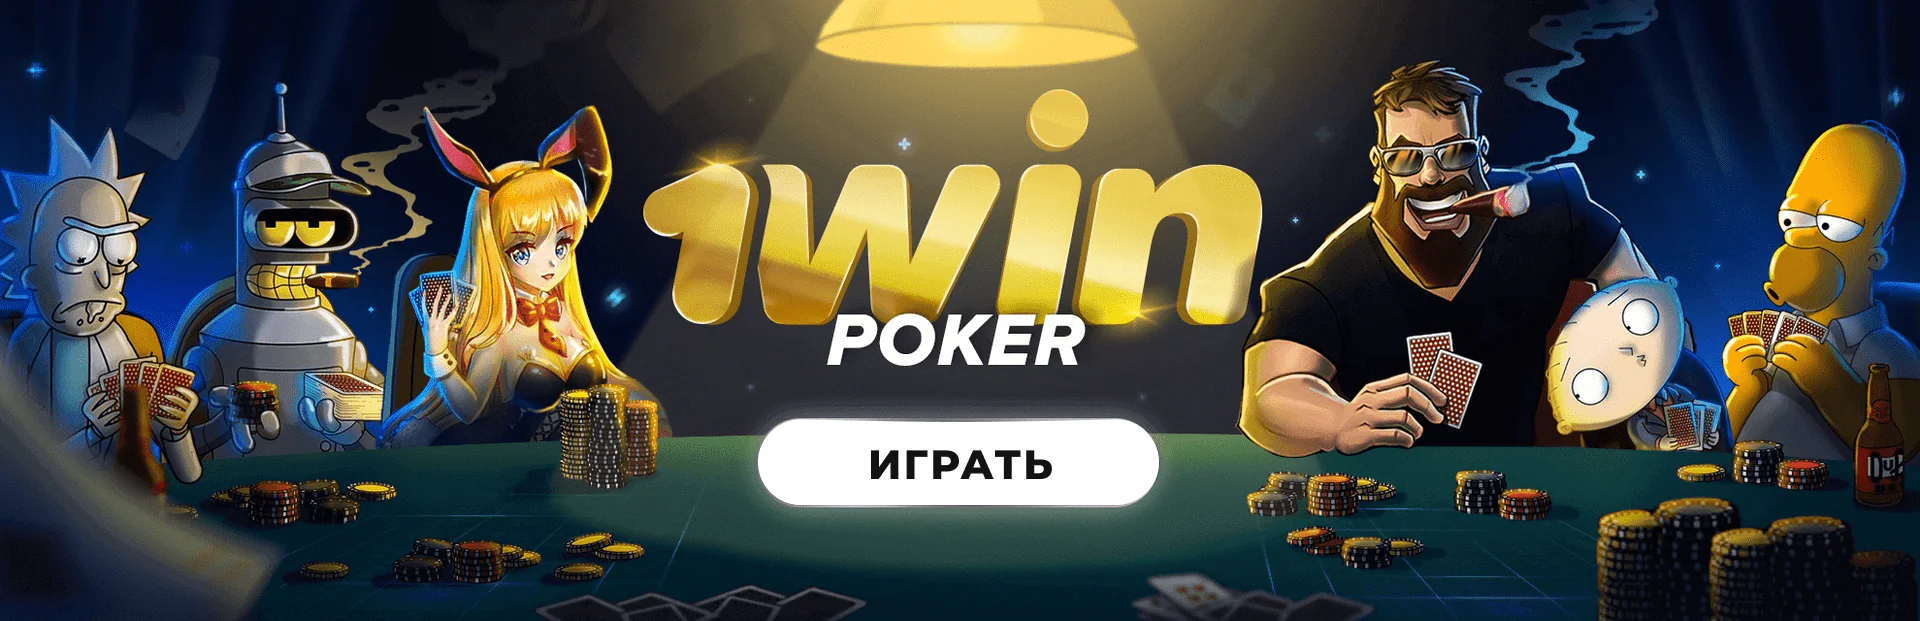 TomHorn производитель игр в казино 1вин Украина 🏆